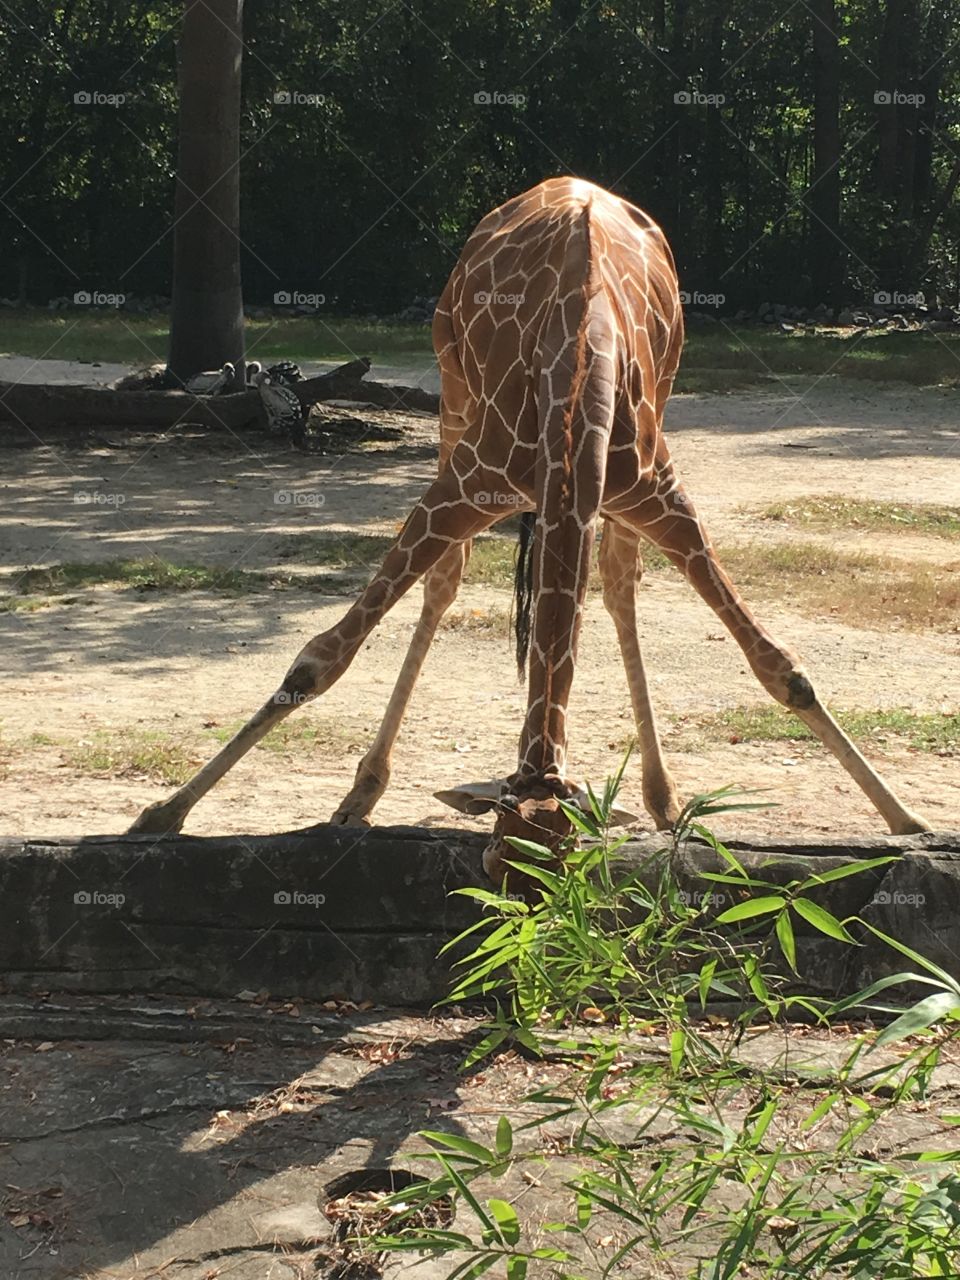 Graceful giraffe 